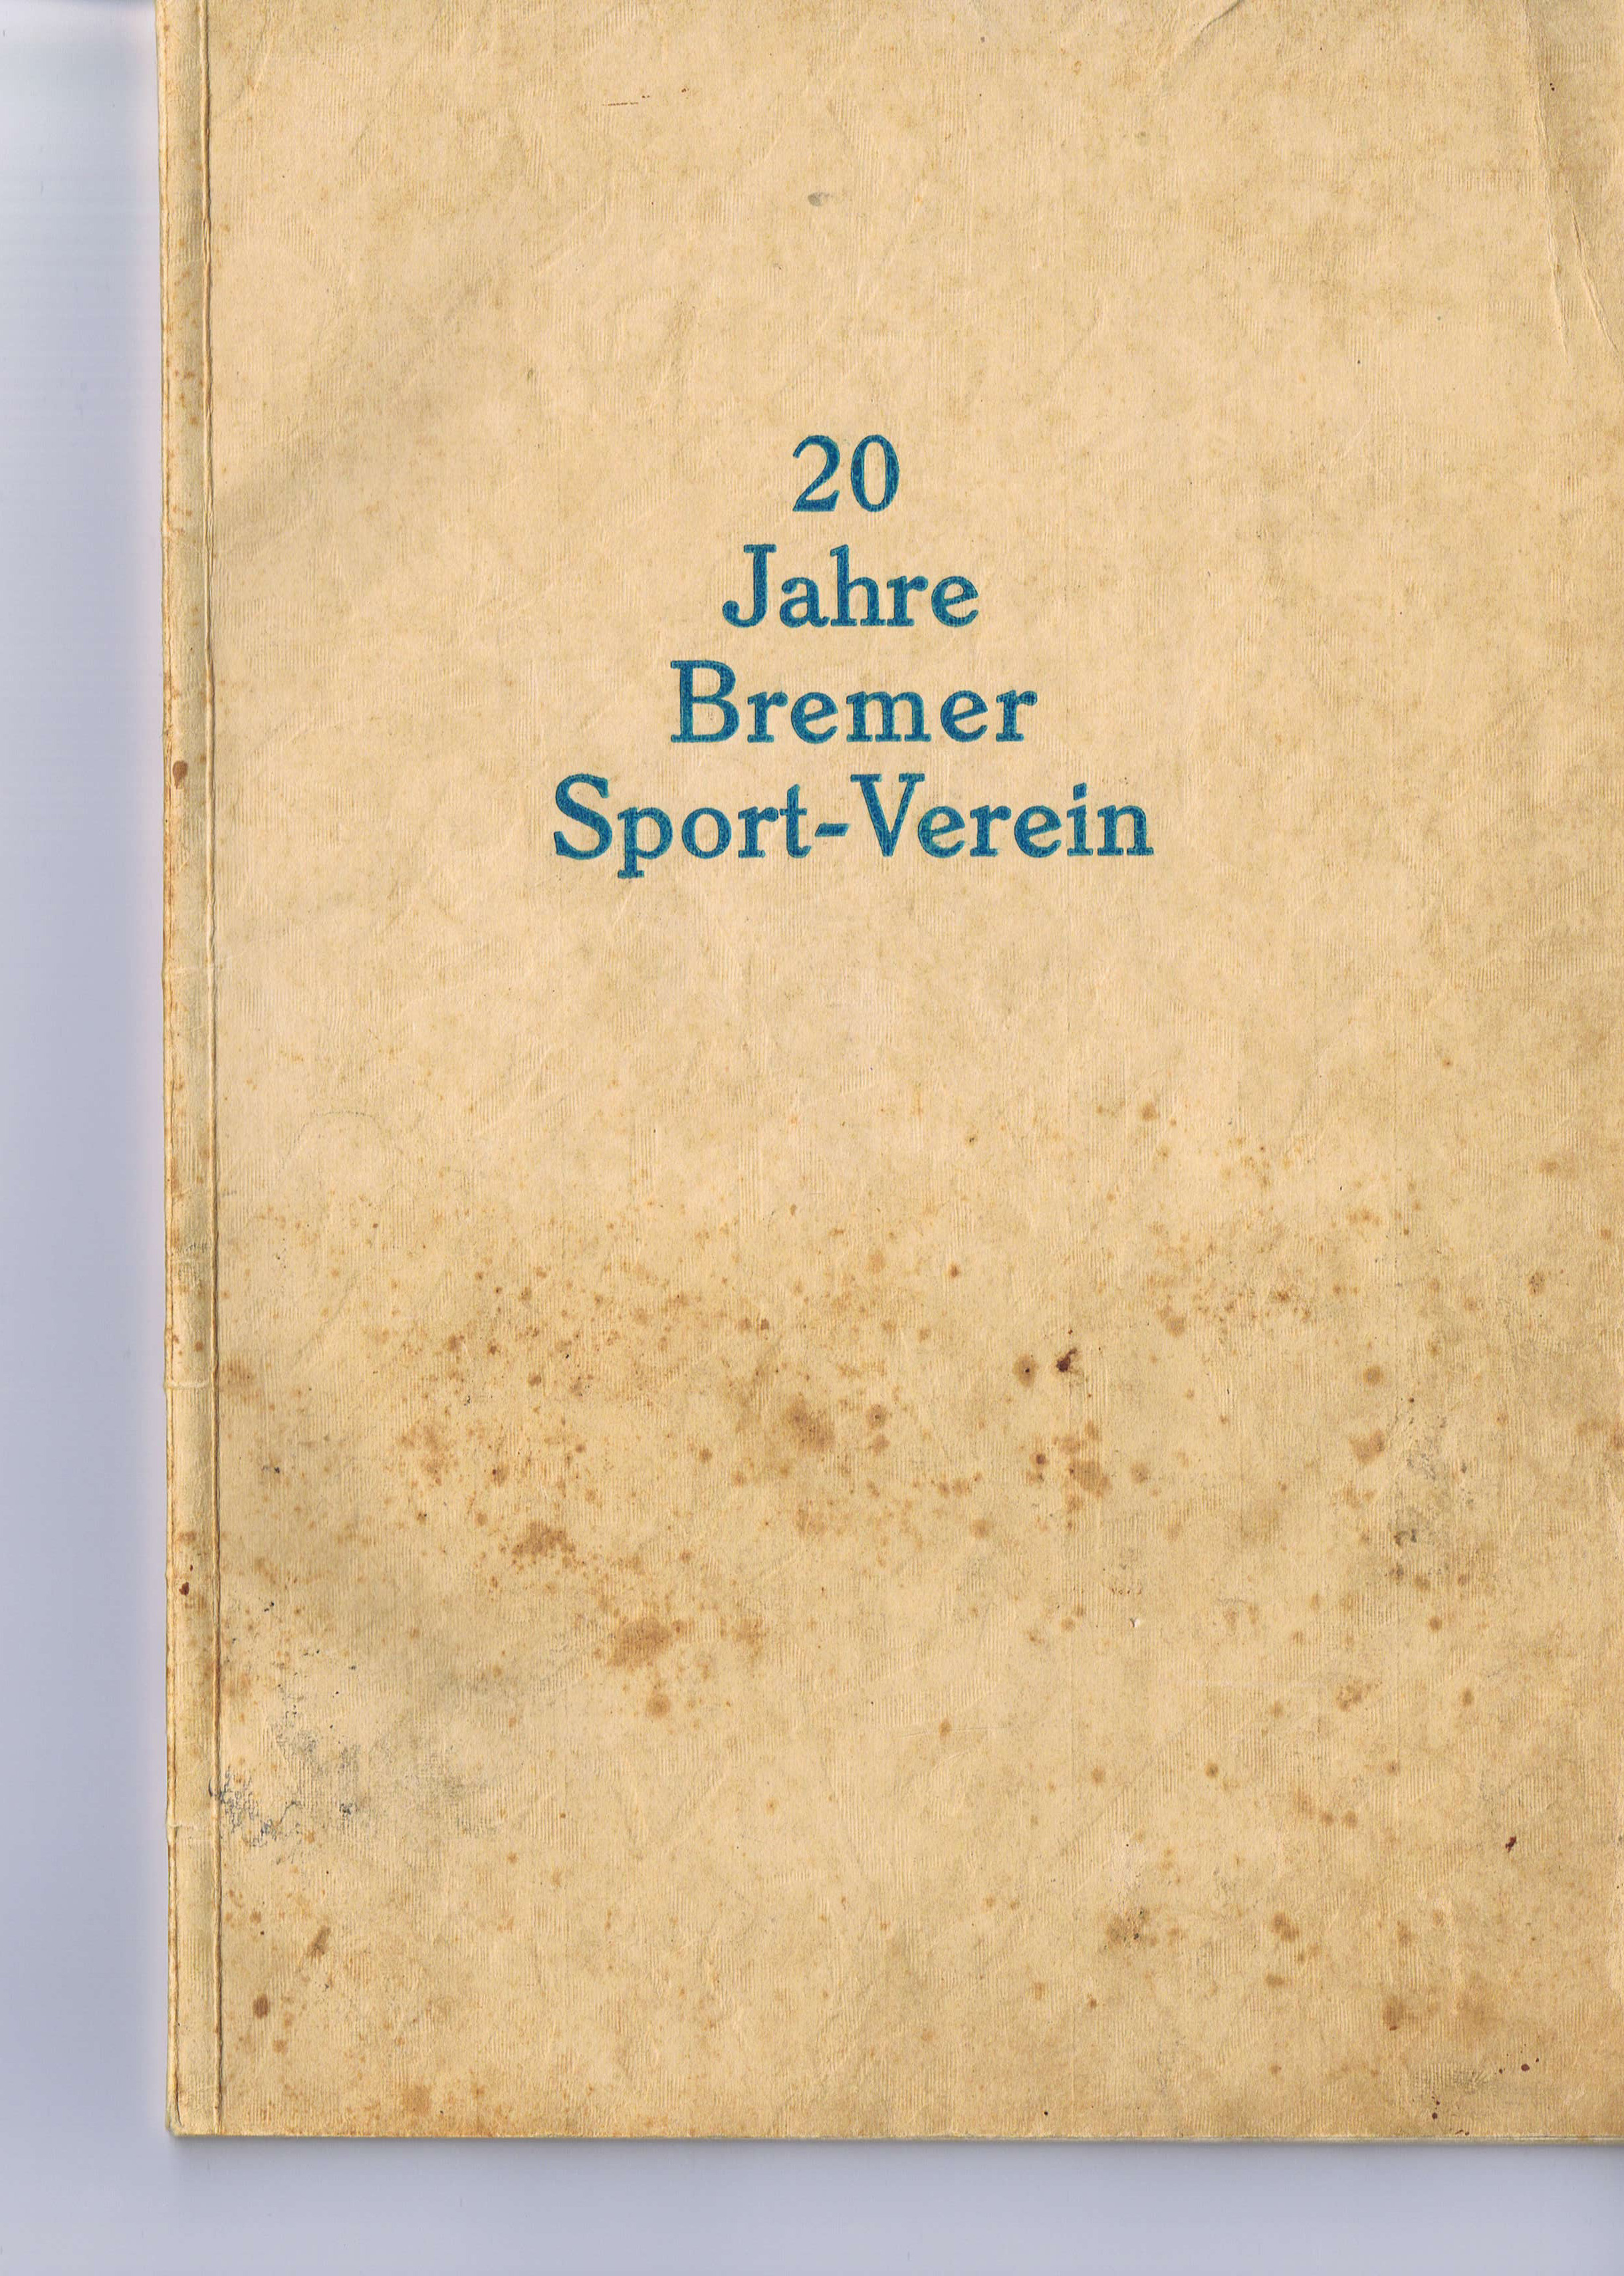 20 Jahre Bremer Sport-Verein